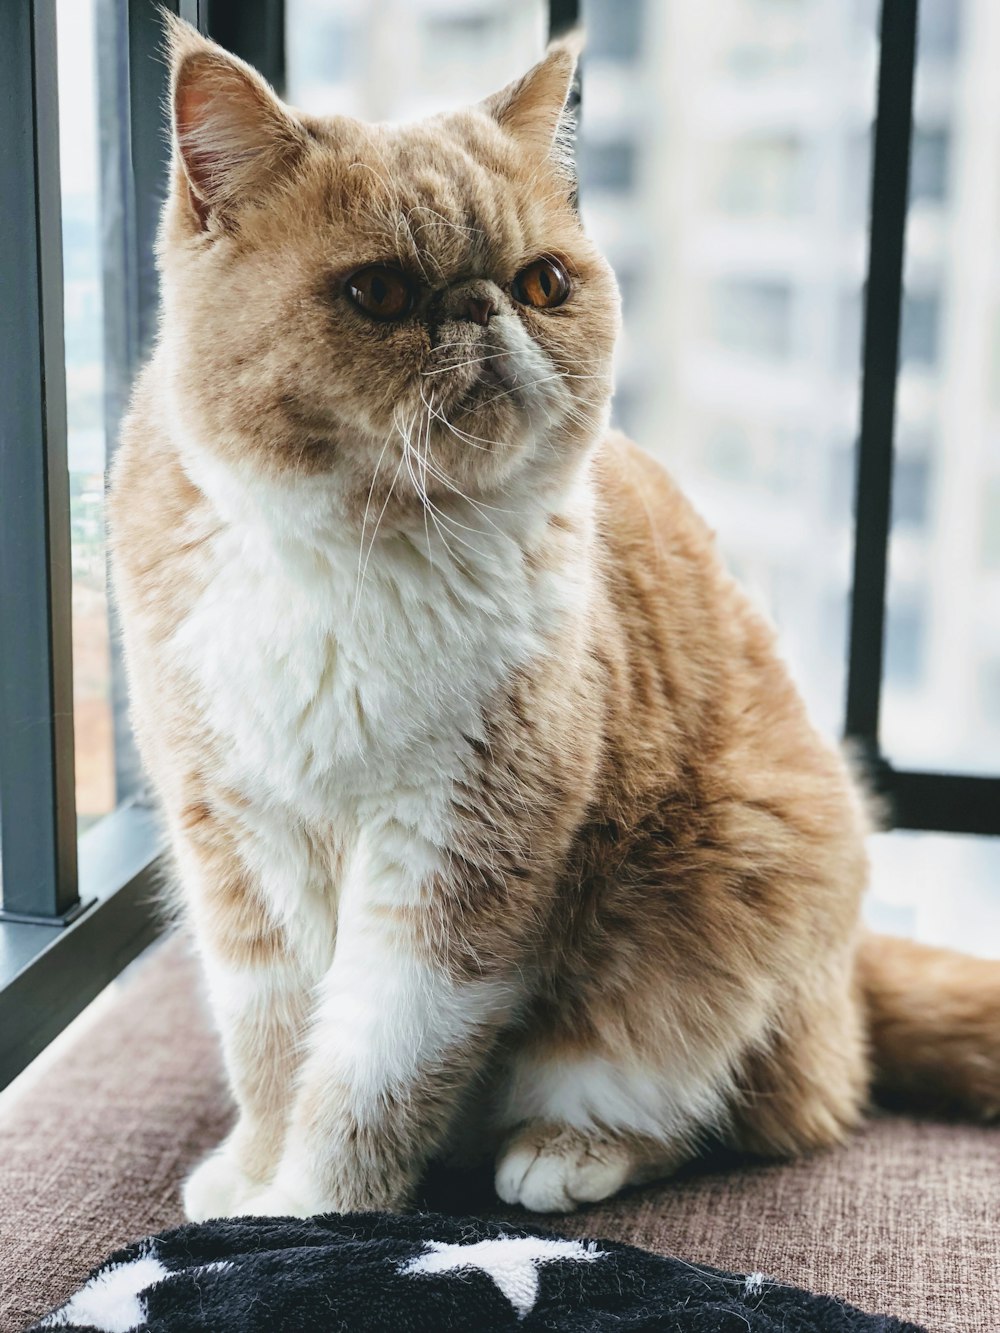 fotografía de enfoque superficial del gato persa naranja